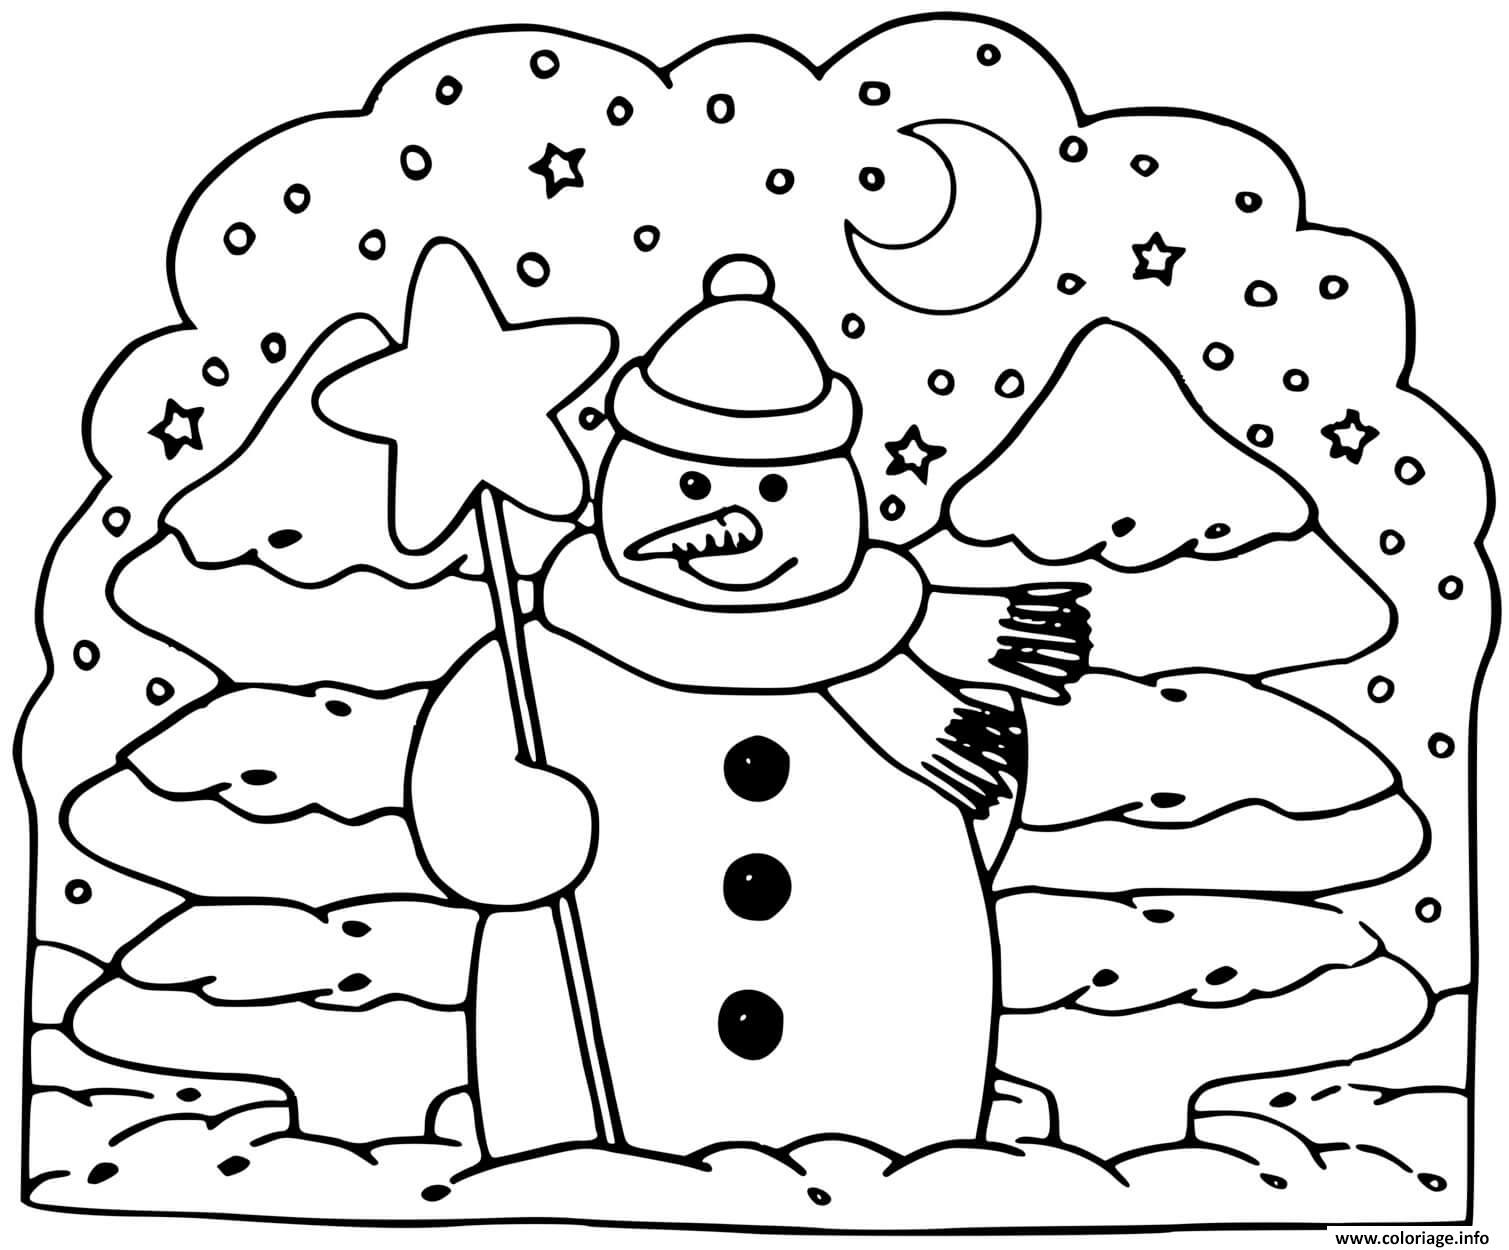 Coloriage bonhomme de neige sapin hiver - JeColorie.com